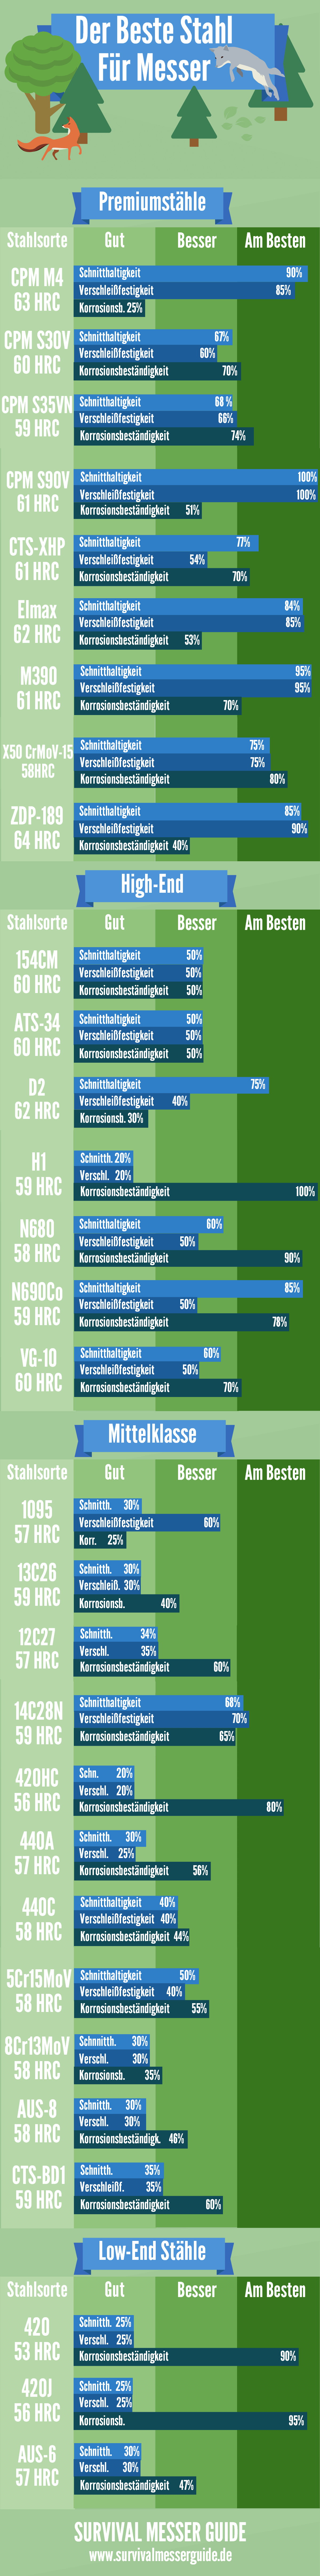 infografik-was-is-der-beste-stahl-fuer-ein-messer v3